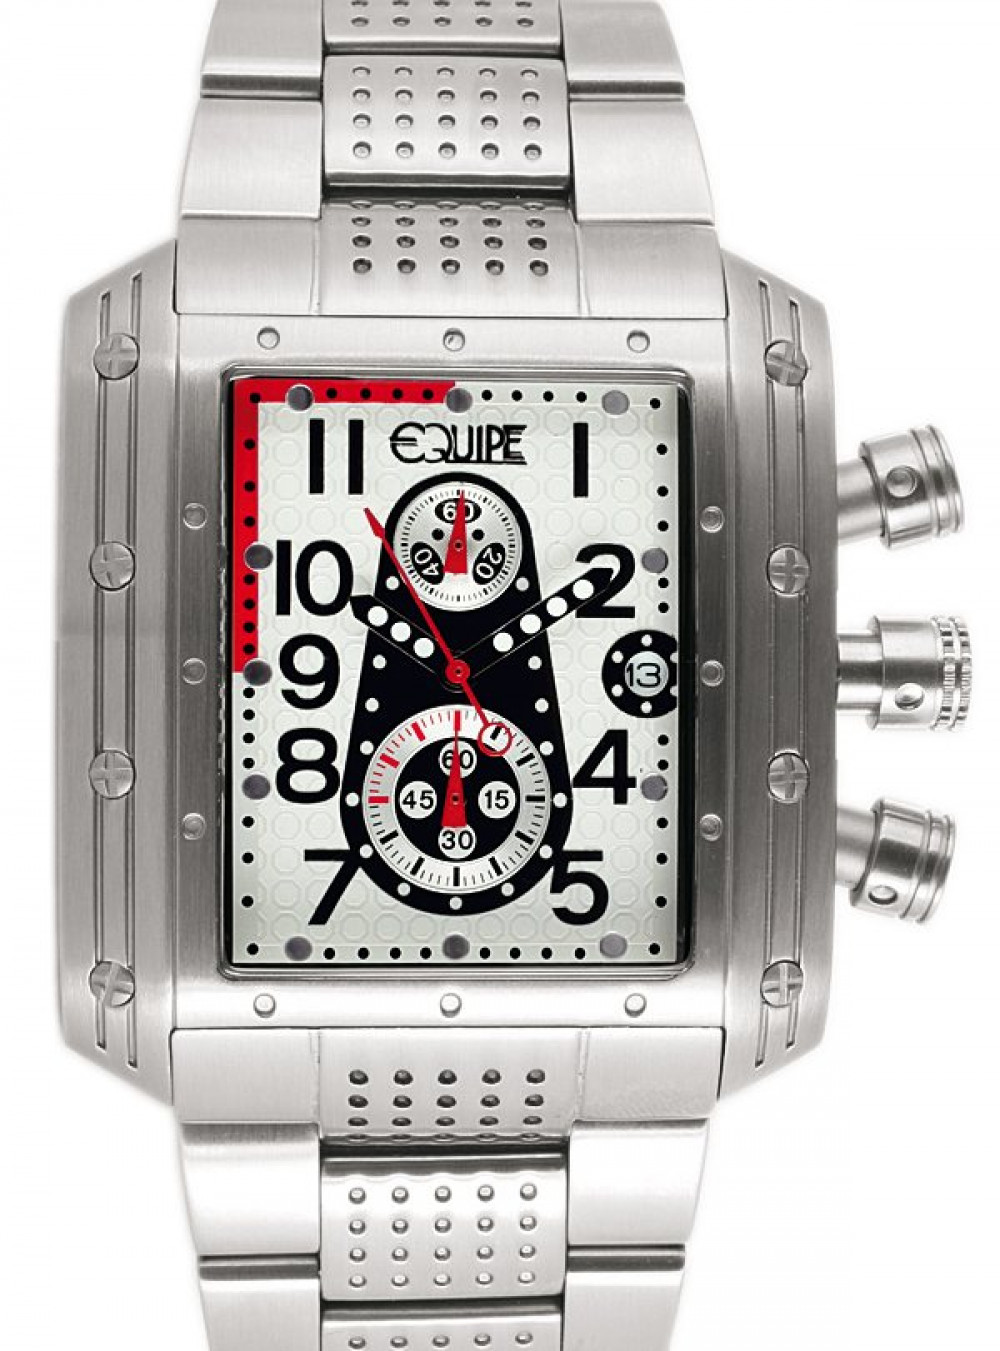 Zegarek firmy Equipe, model Big Block